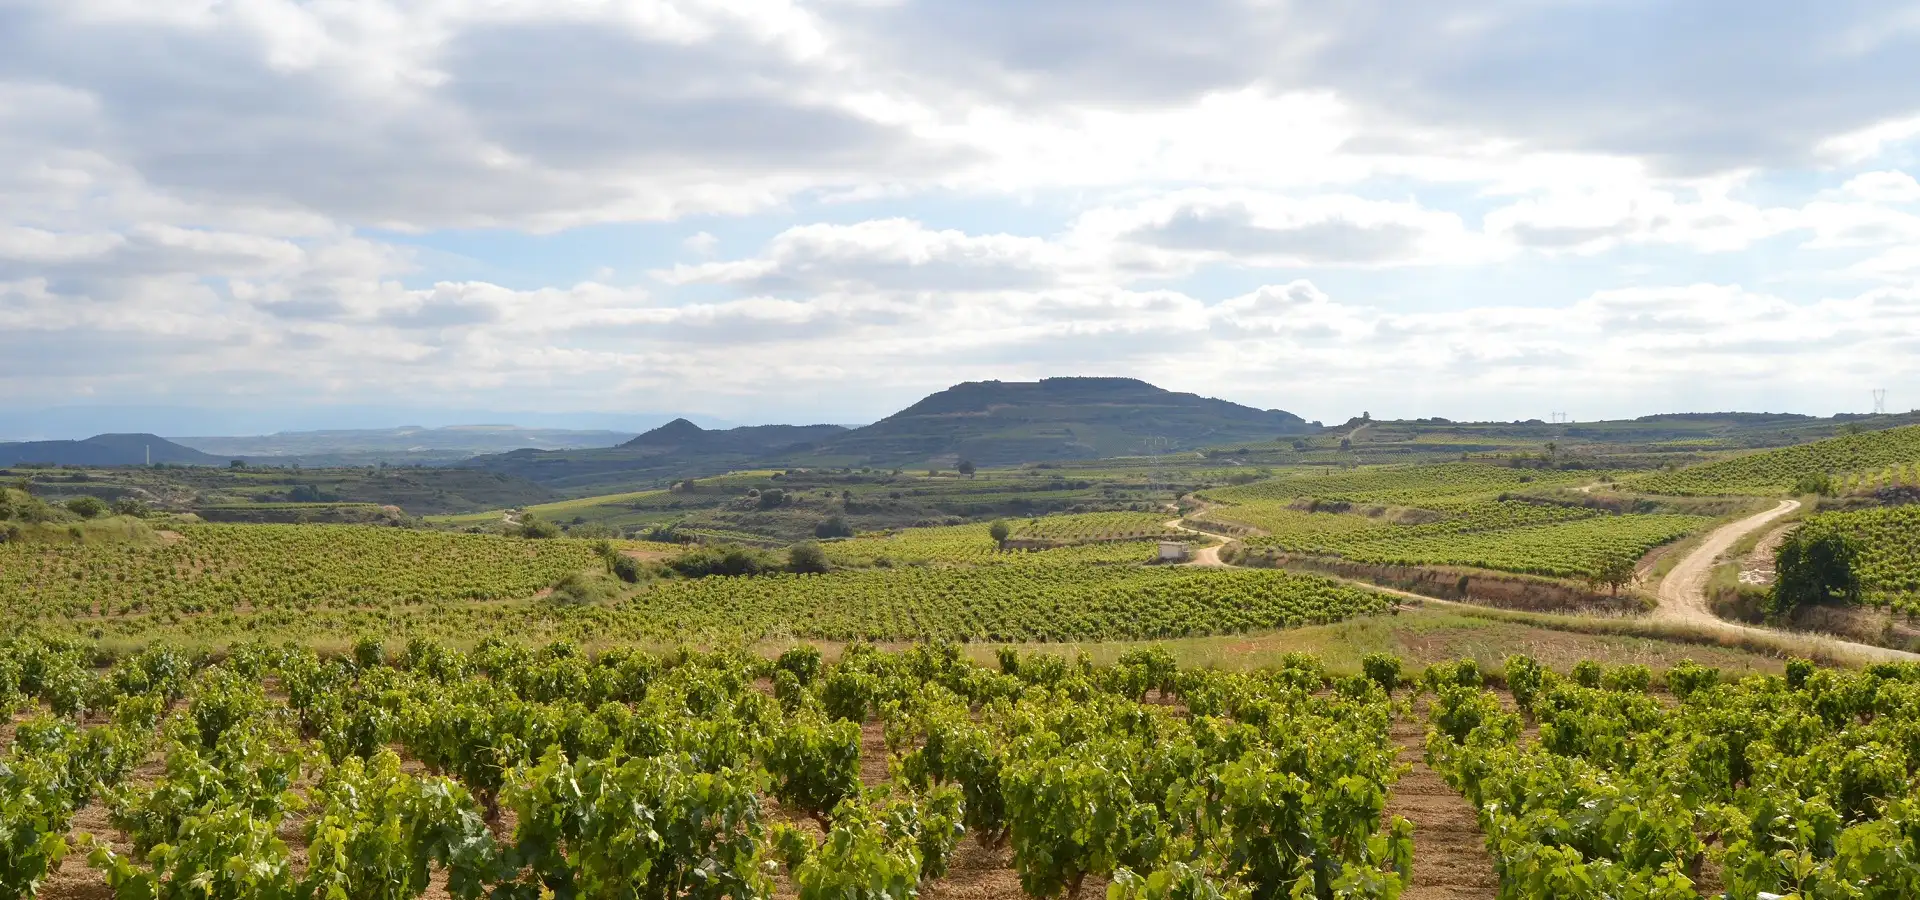 Wein-Anbaugebiete in Spanien